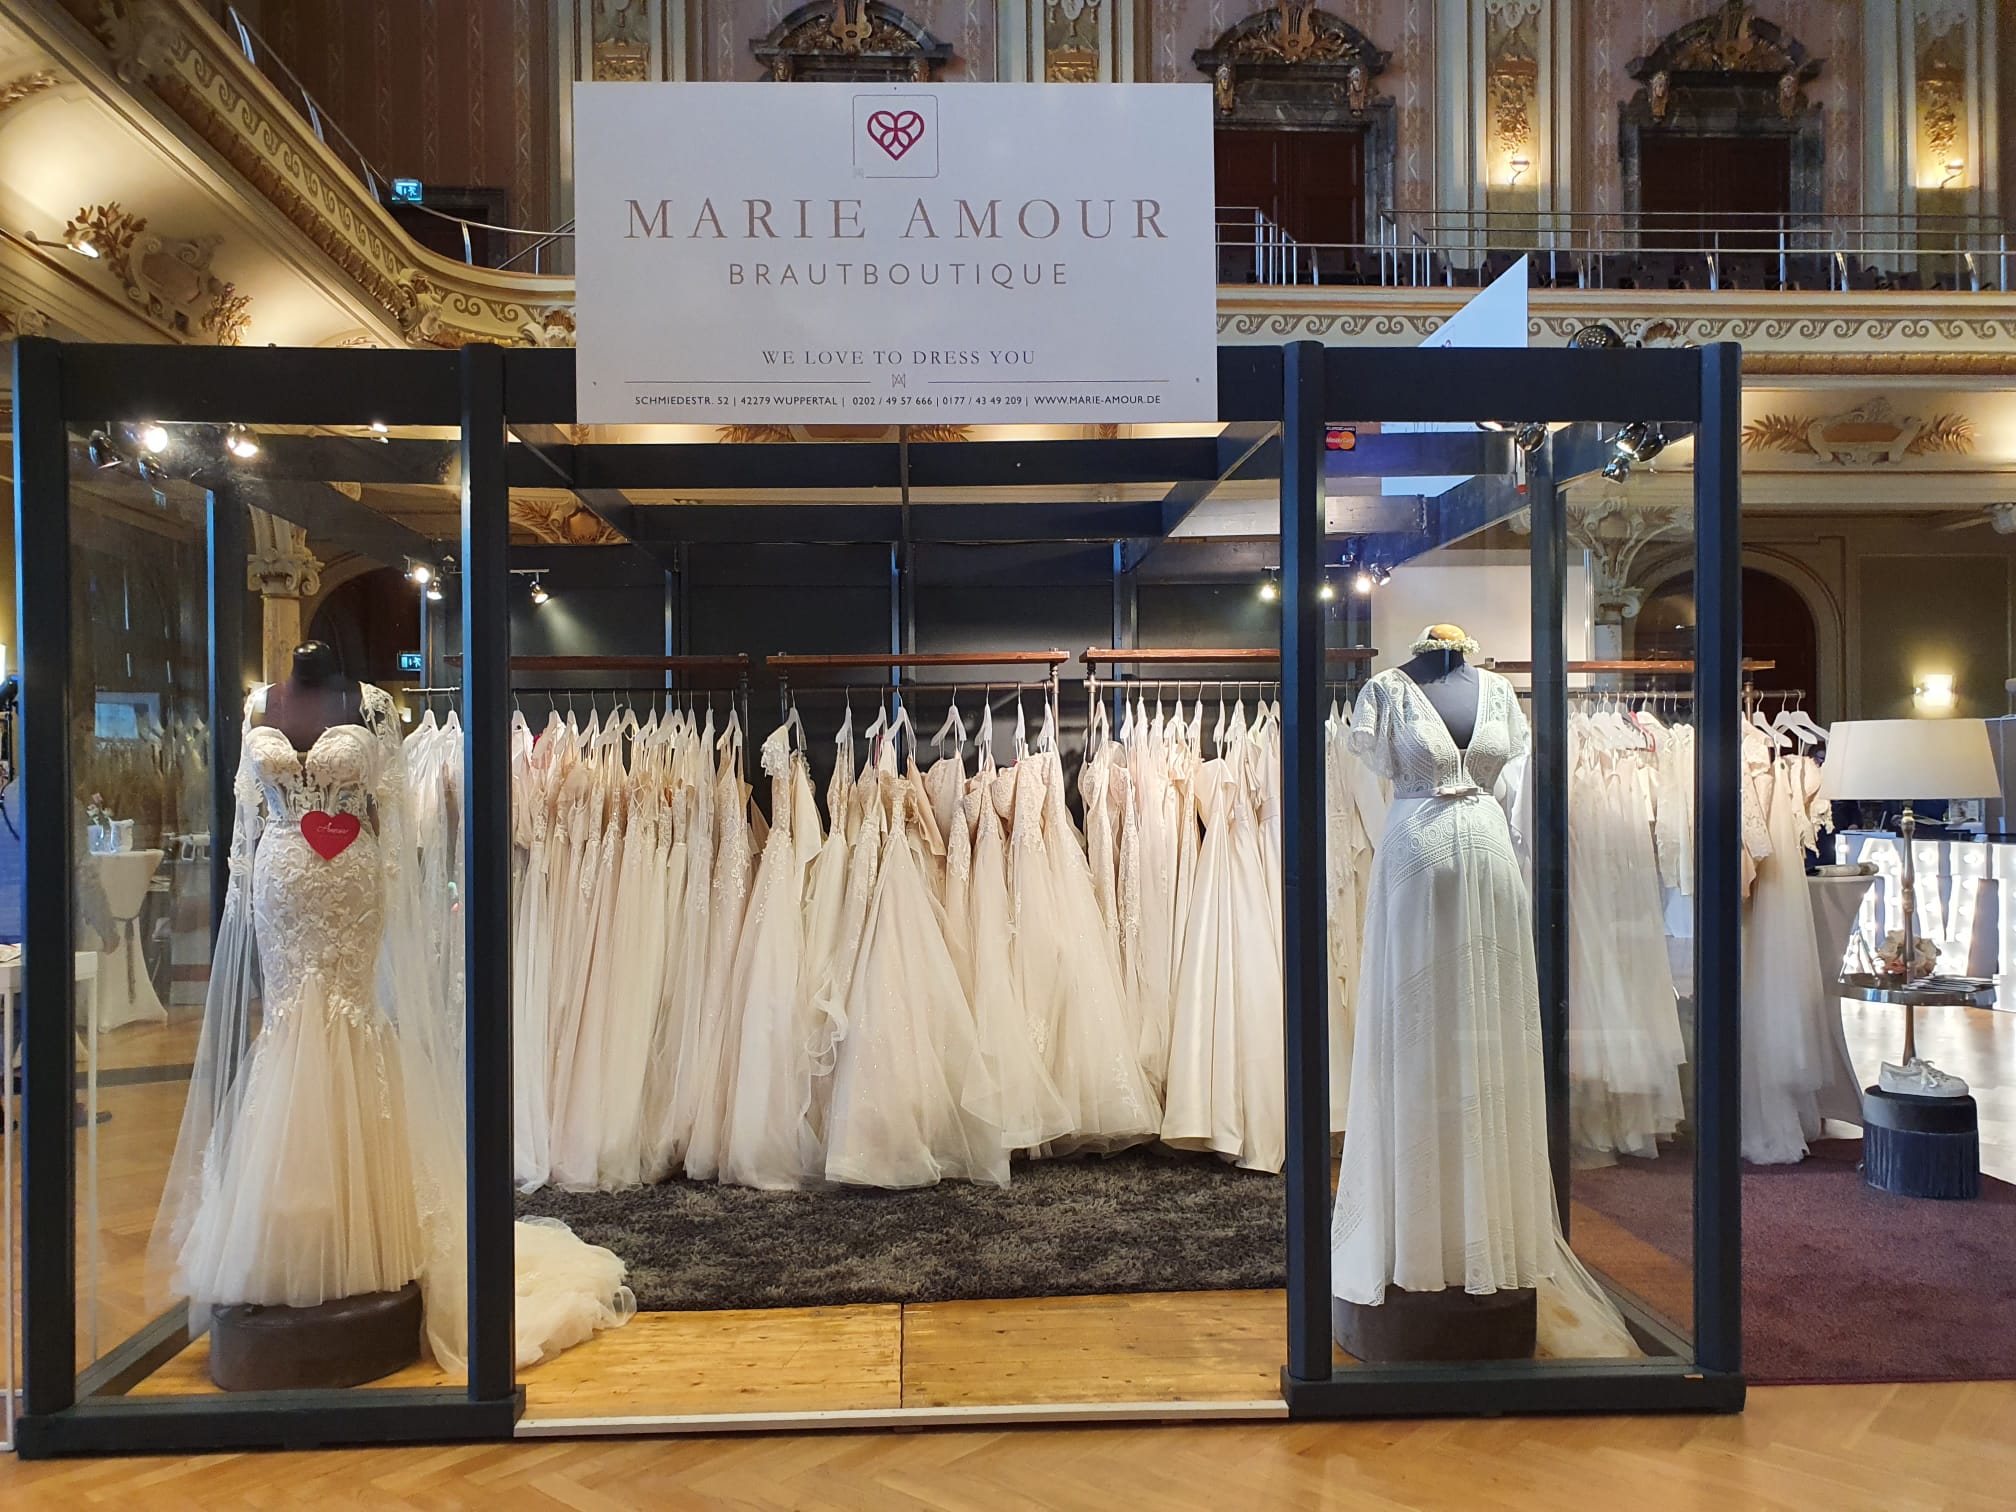 Traum in Weiß gesucht: Werde das Gesicht unserer Brautkleider